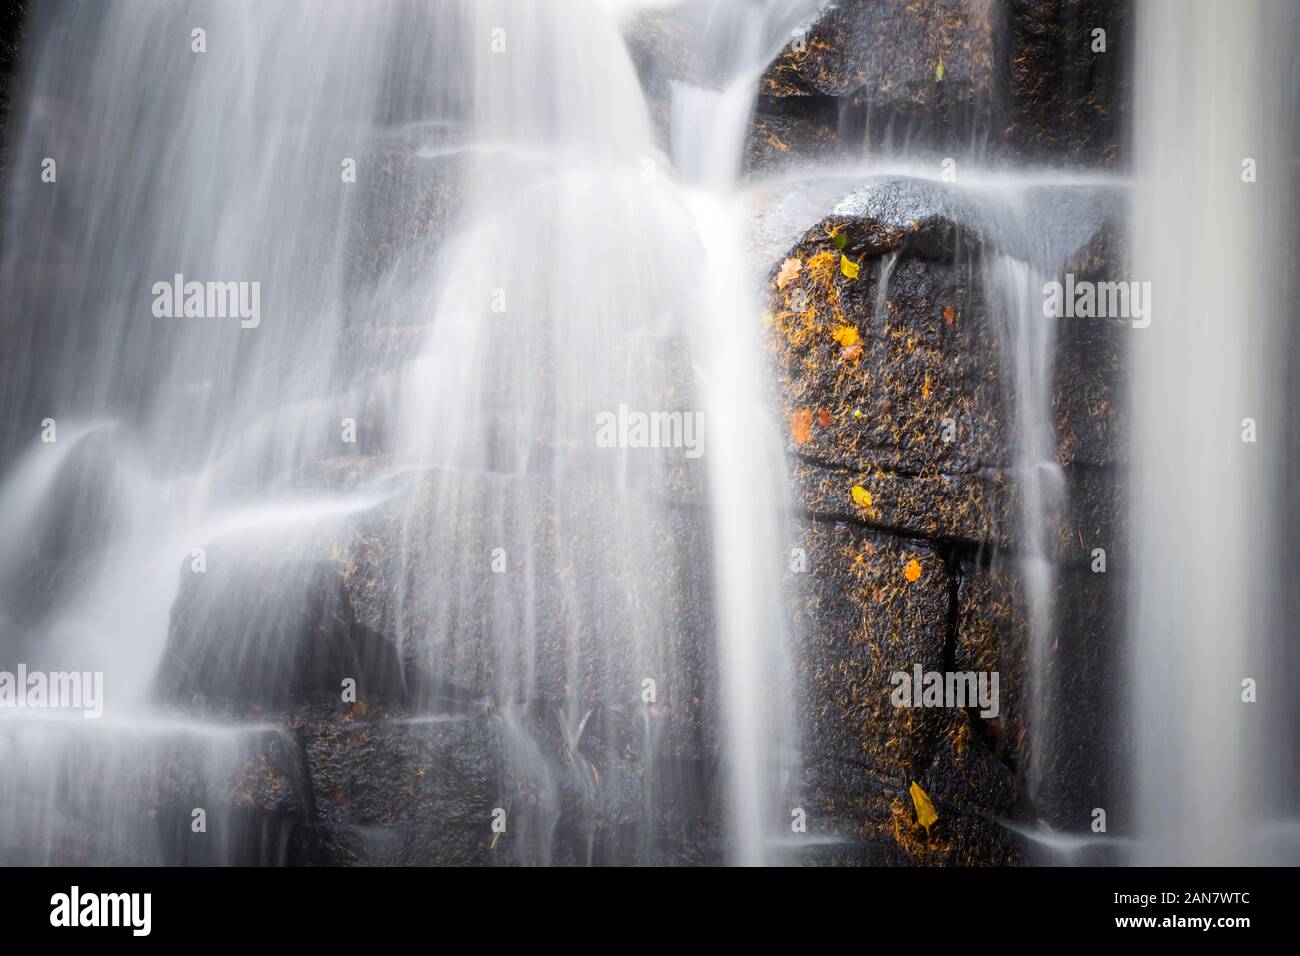 Foglie autunnali su una parete rocciosa dietro una cascata, con acqua sfocata, a Wharnley Burn, Allensford, vicino a Consett, County Durham, Regno Unito Foto Stock